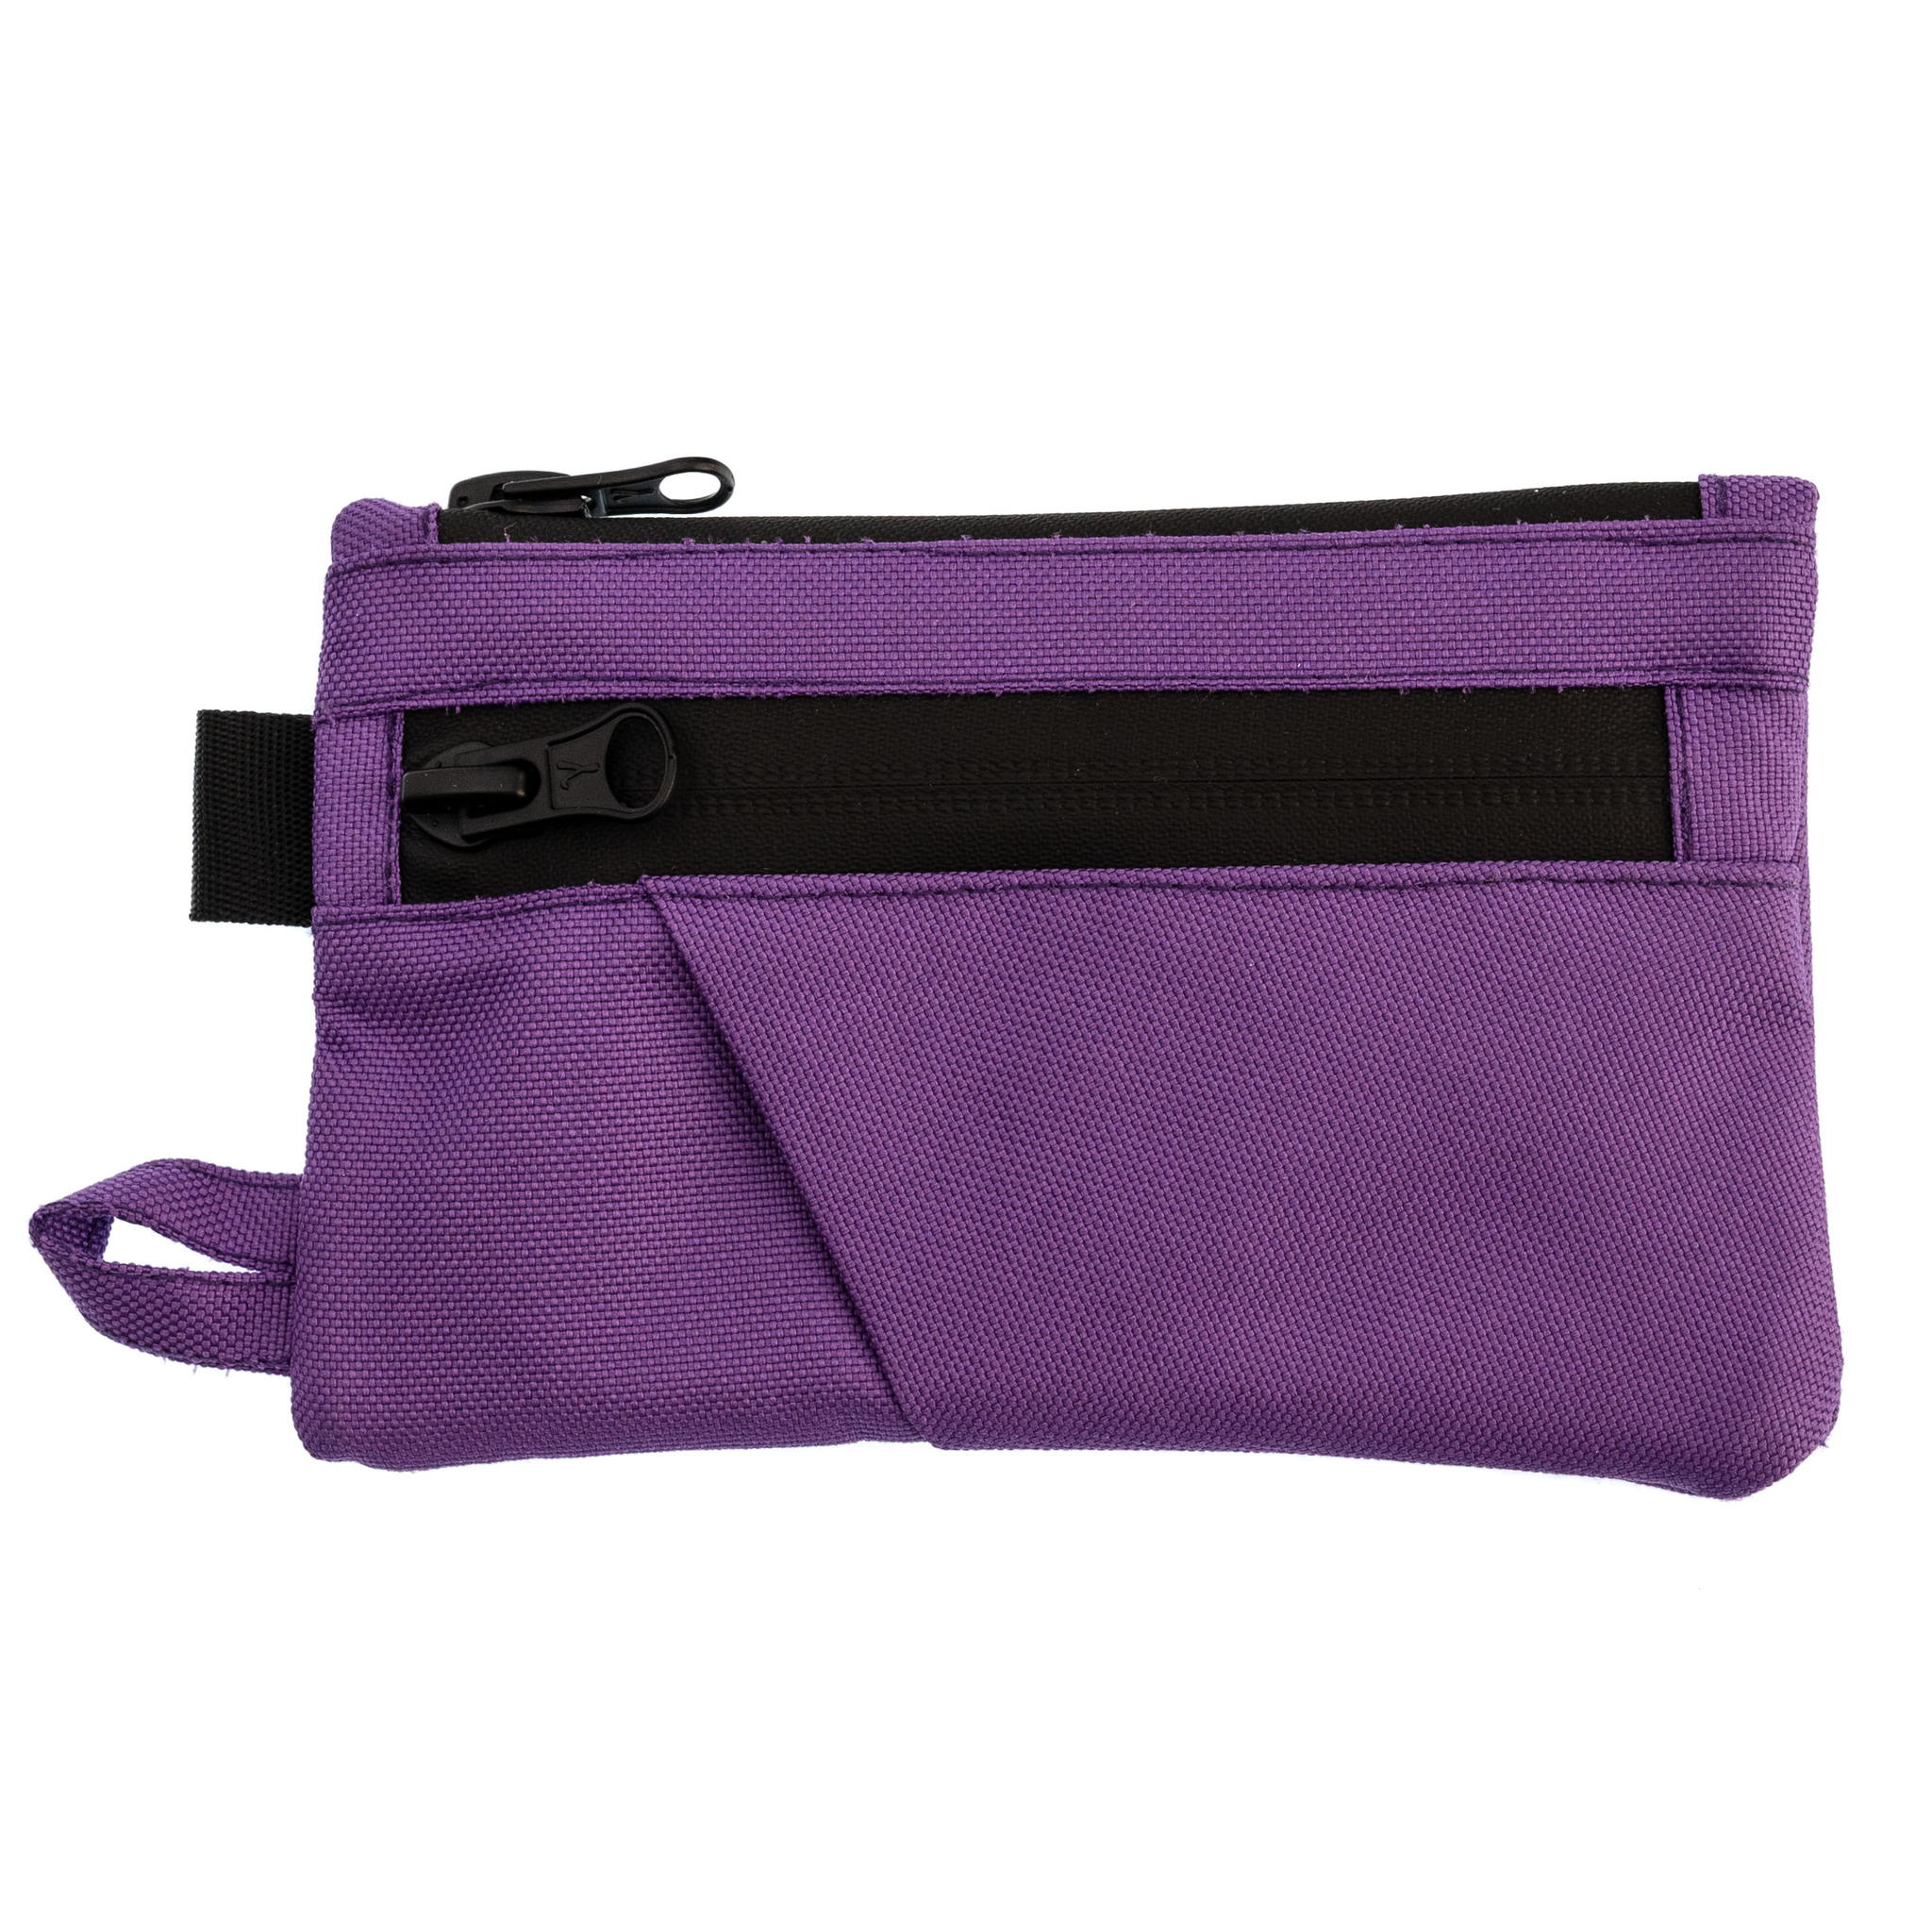 Органайзер (поуч) New Level, фиолетовый рюкзак на молнии наружный карман 2 боковых кармана кошелёк фиолетовый